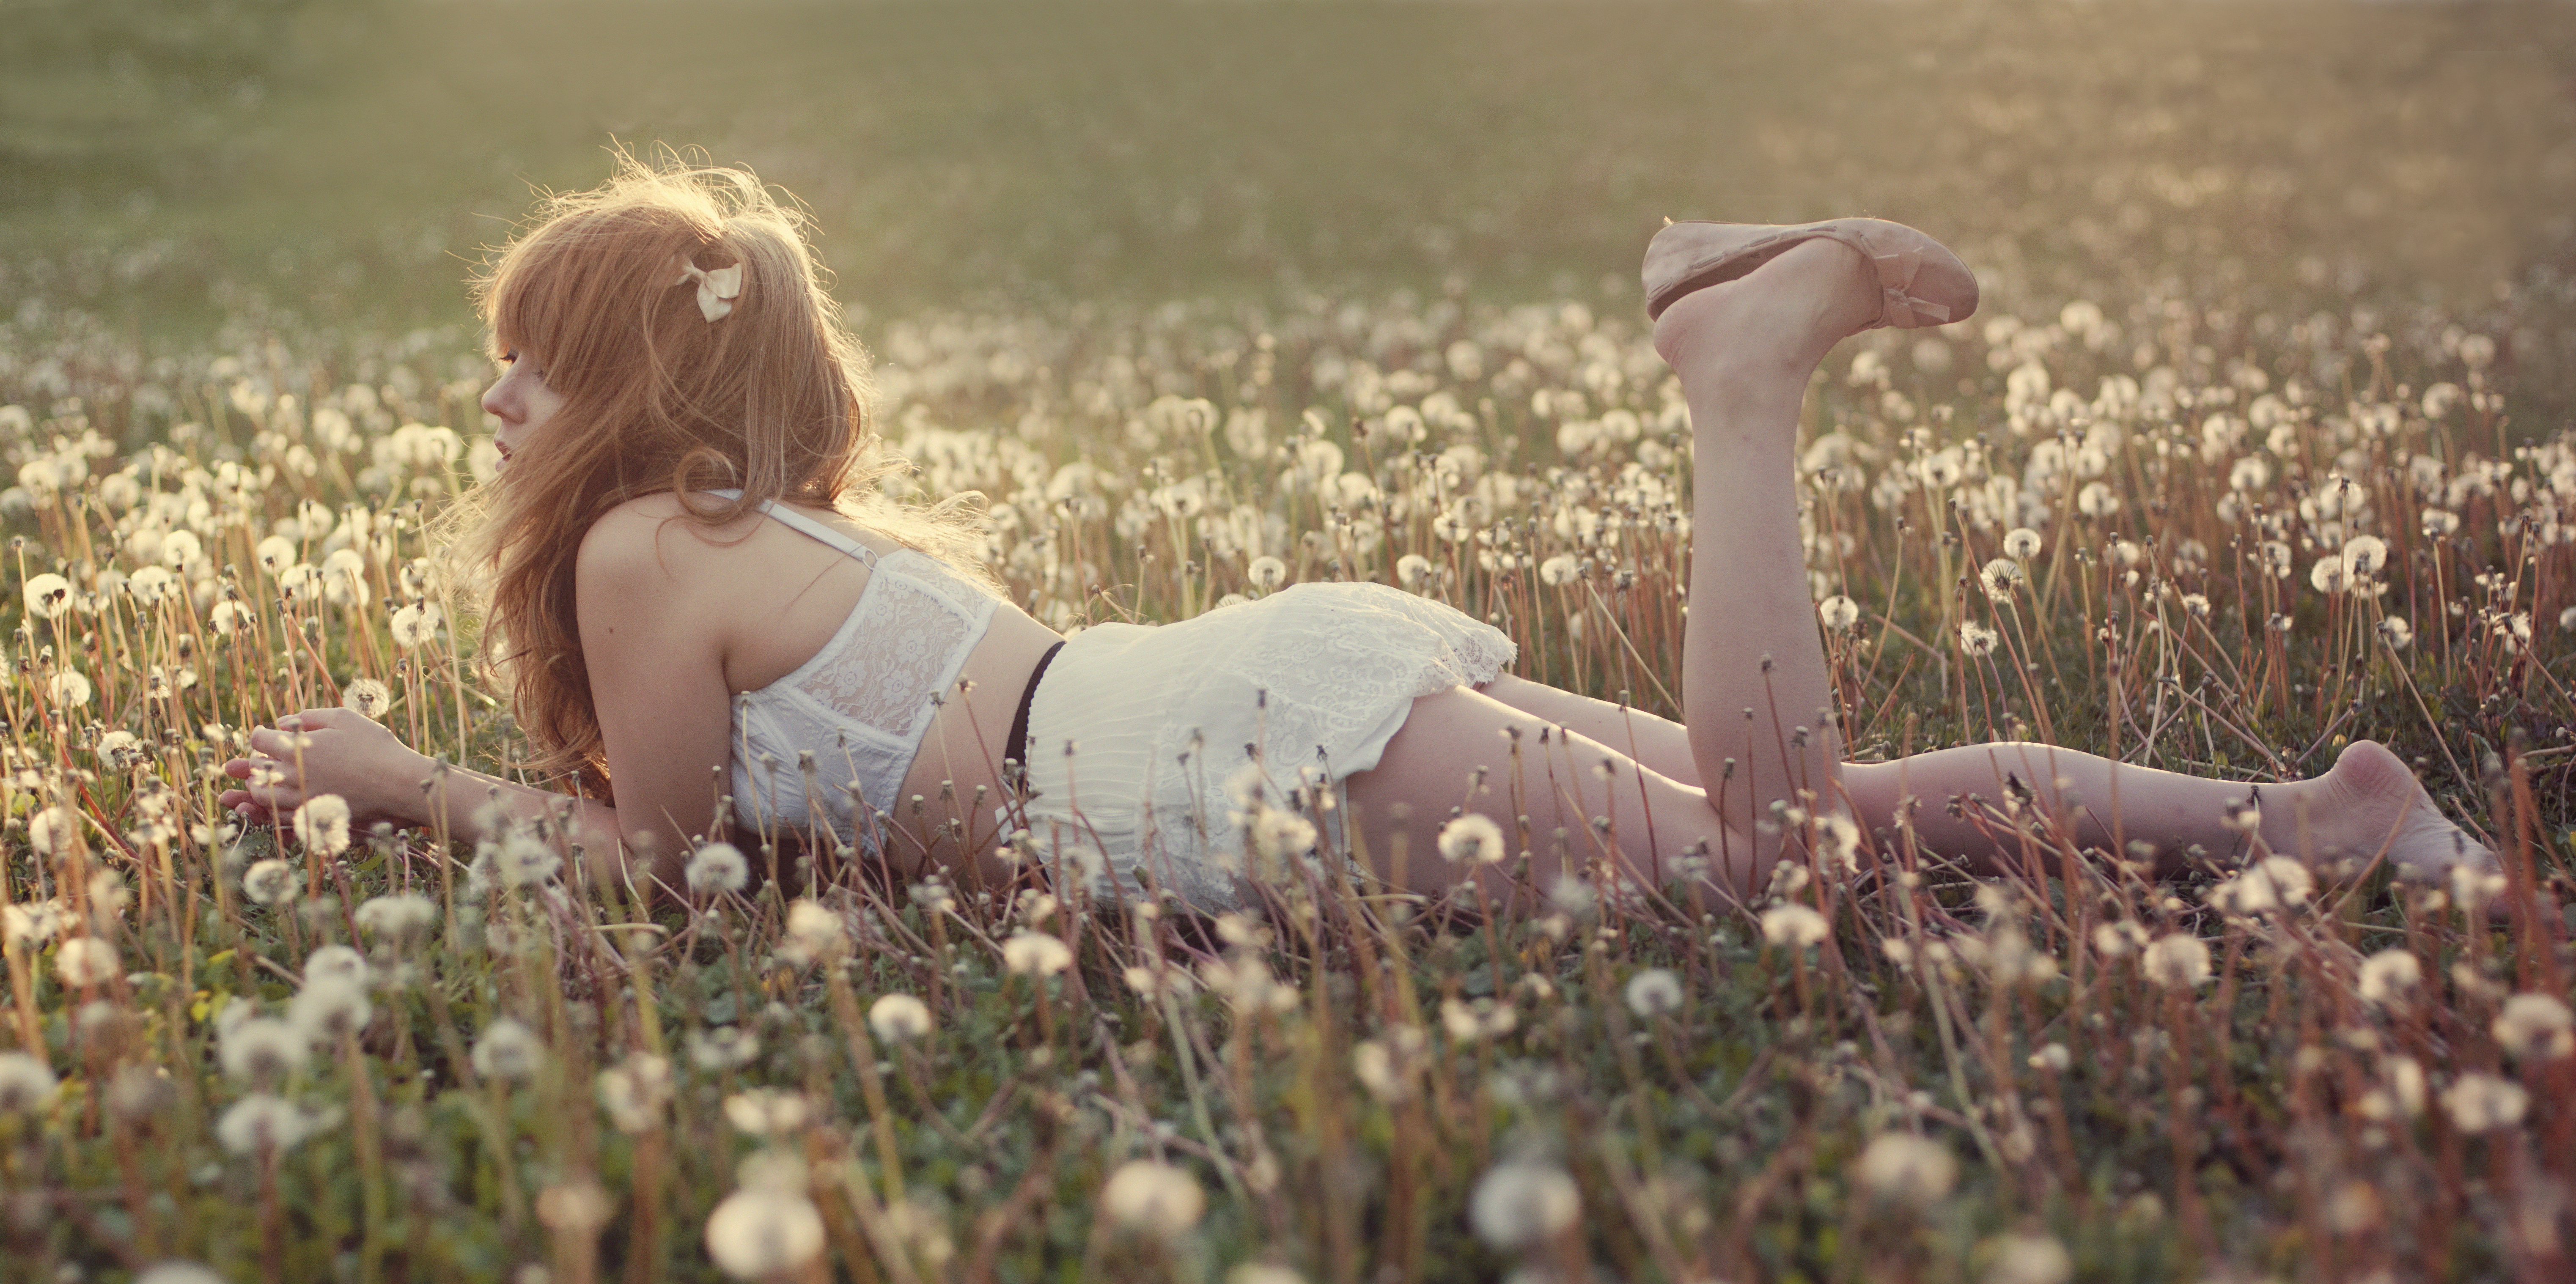 A girl in a field of dandelions